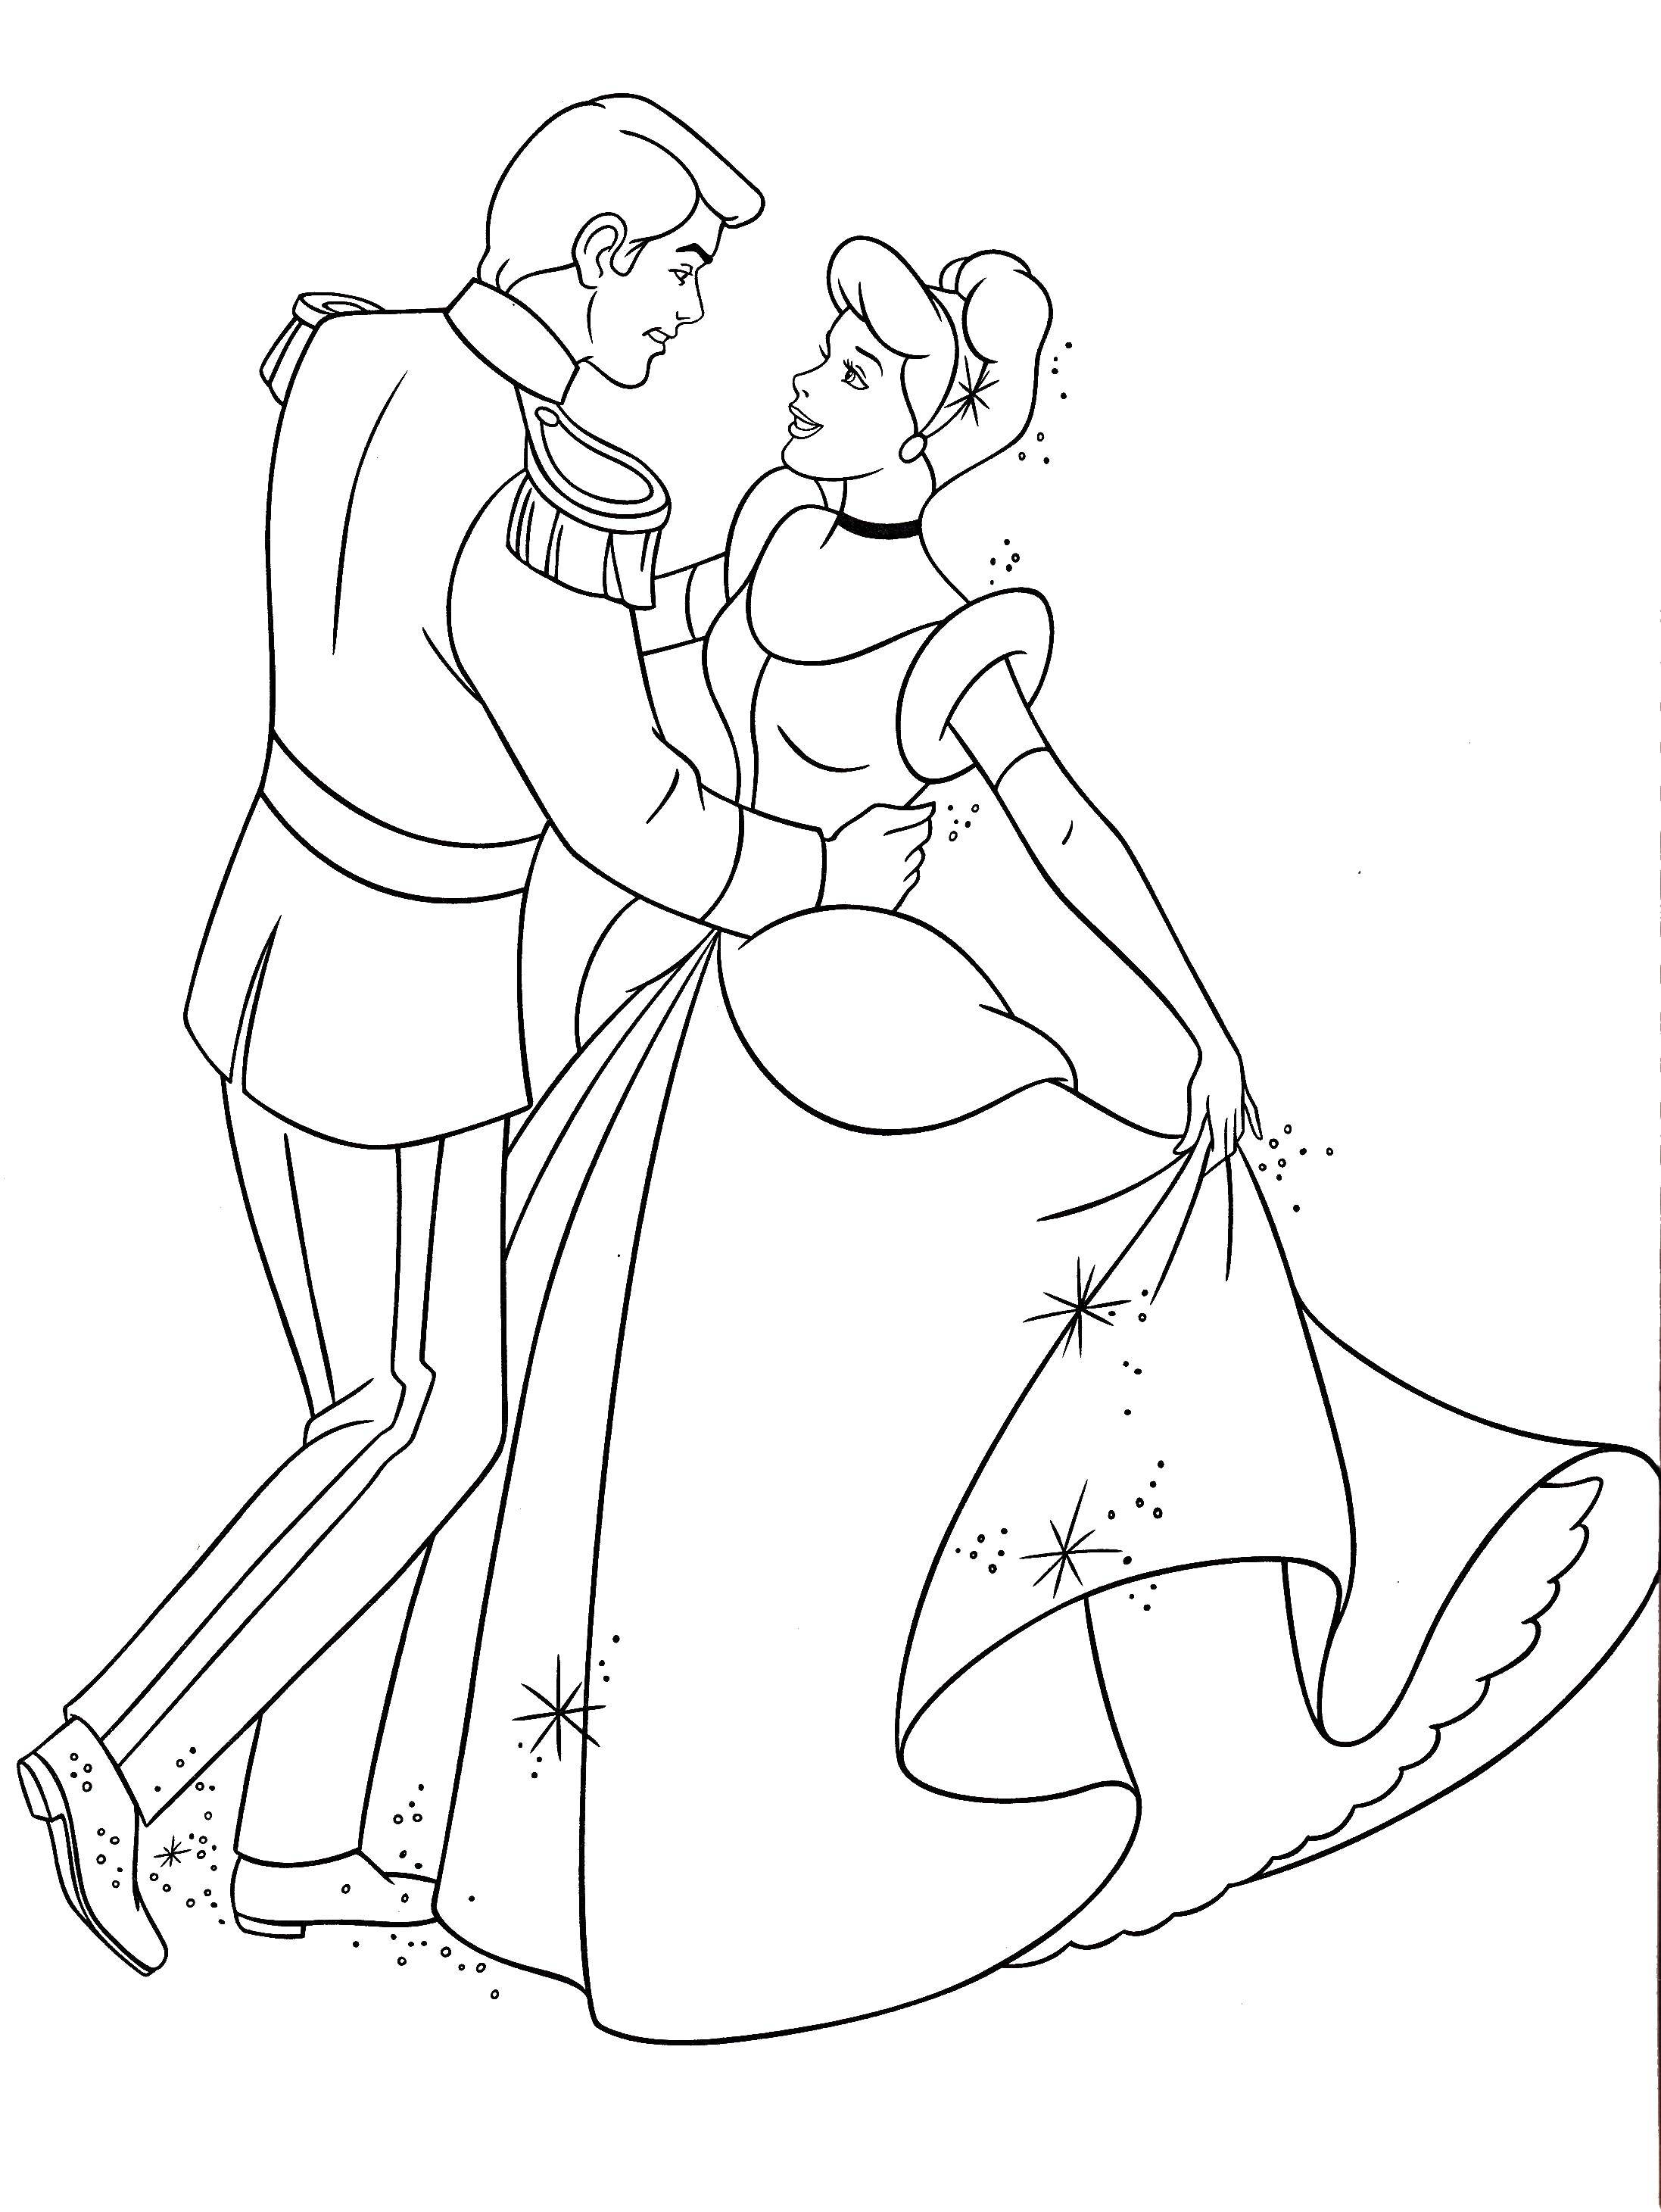 Название: Раскраска Золушка танцует с принцем. Категория: Принцессы. Теги: принцессы, мультфильмы, сказки, Золушка.